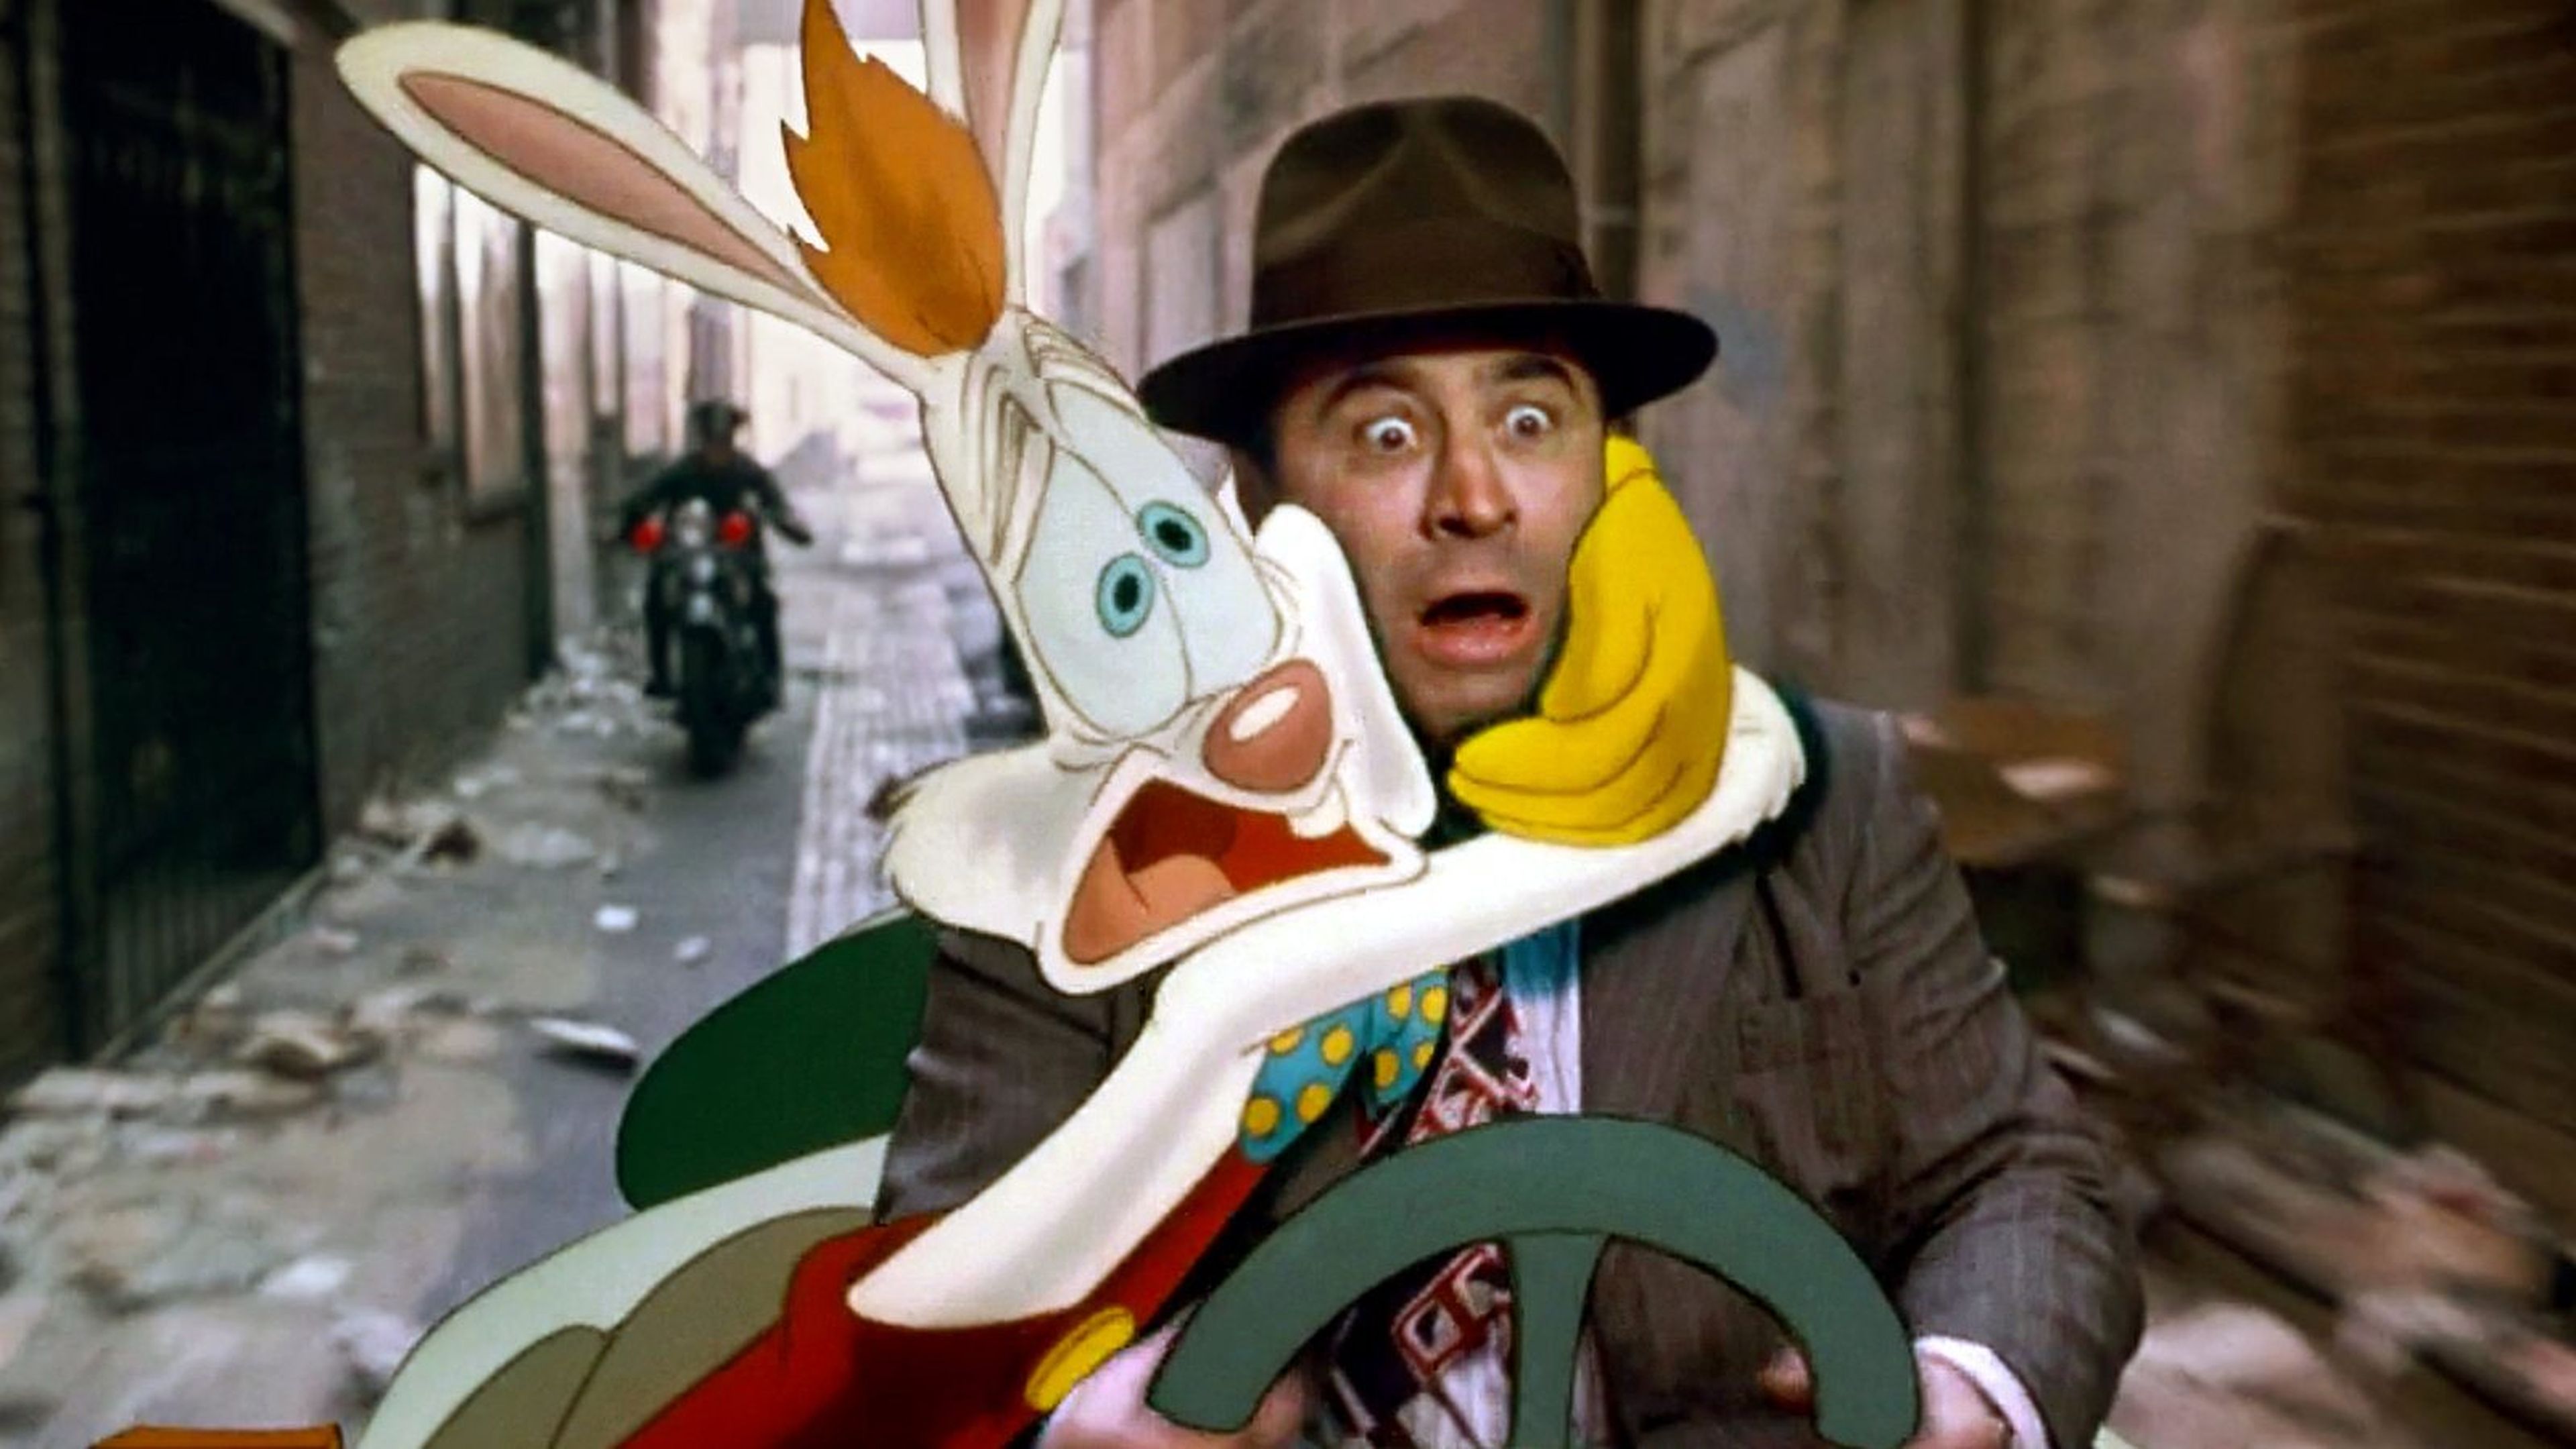 Quien engaño a Roger Rabbit